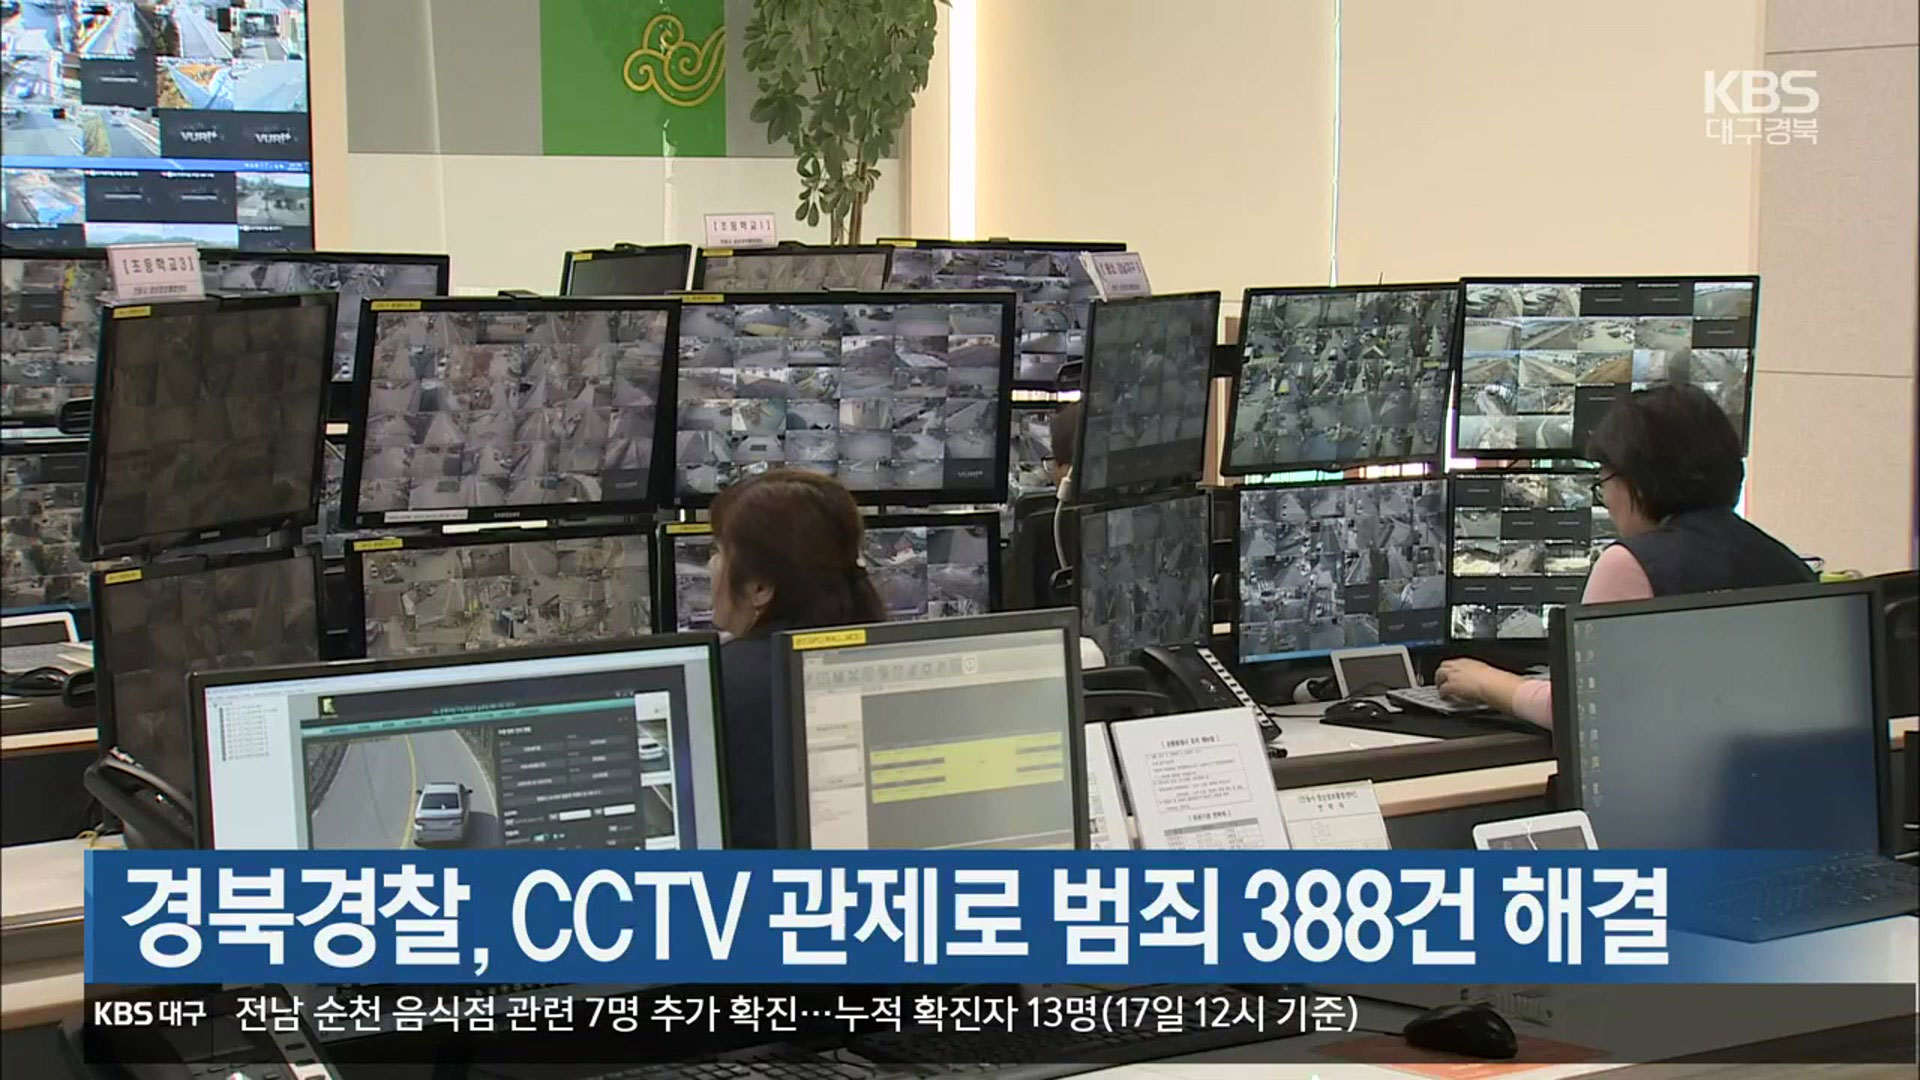 경북경찰, CCTV 관제로 범죄 388건 해결